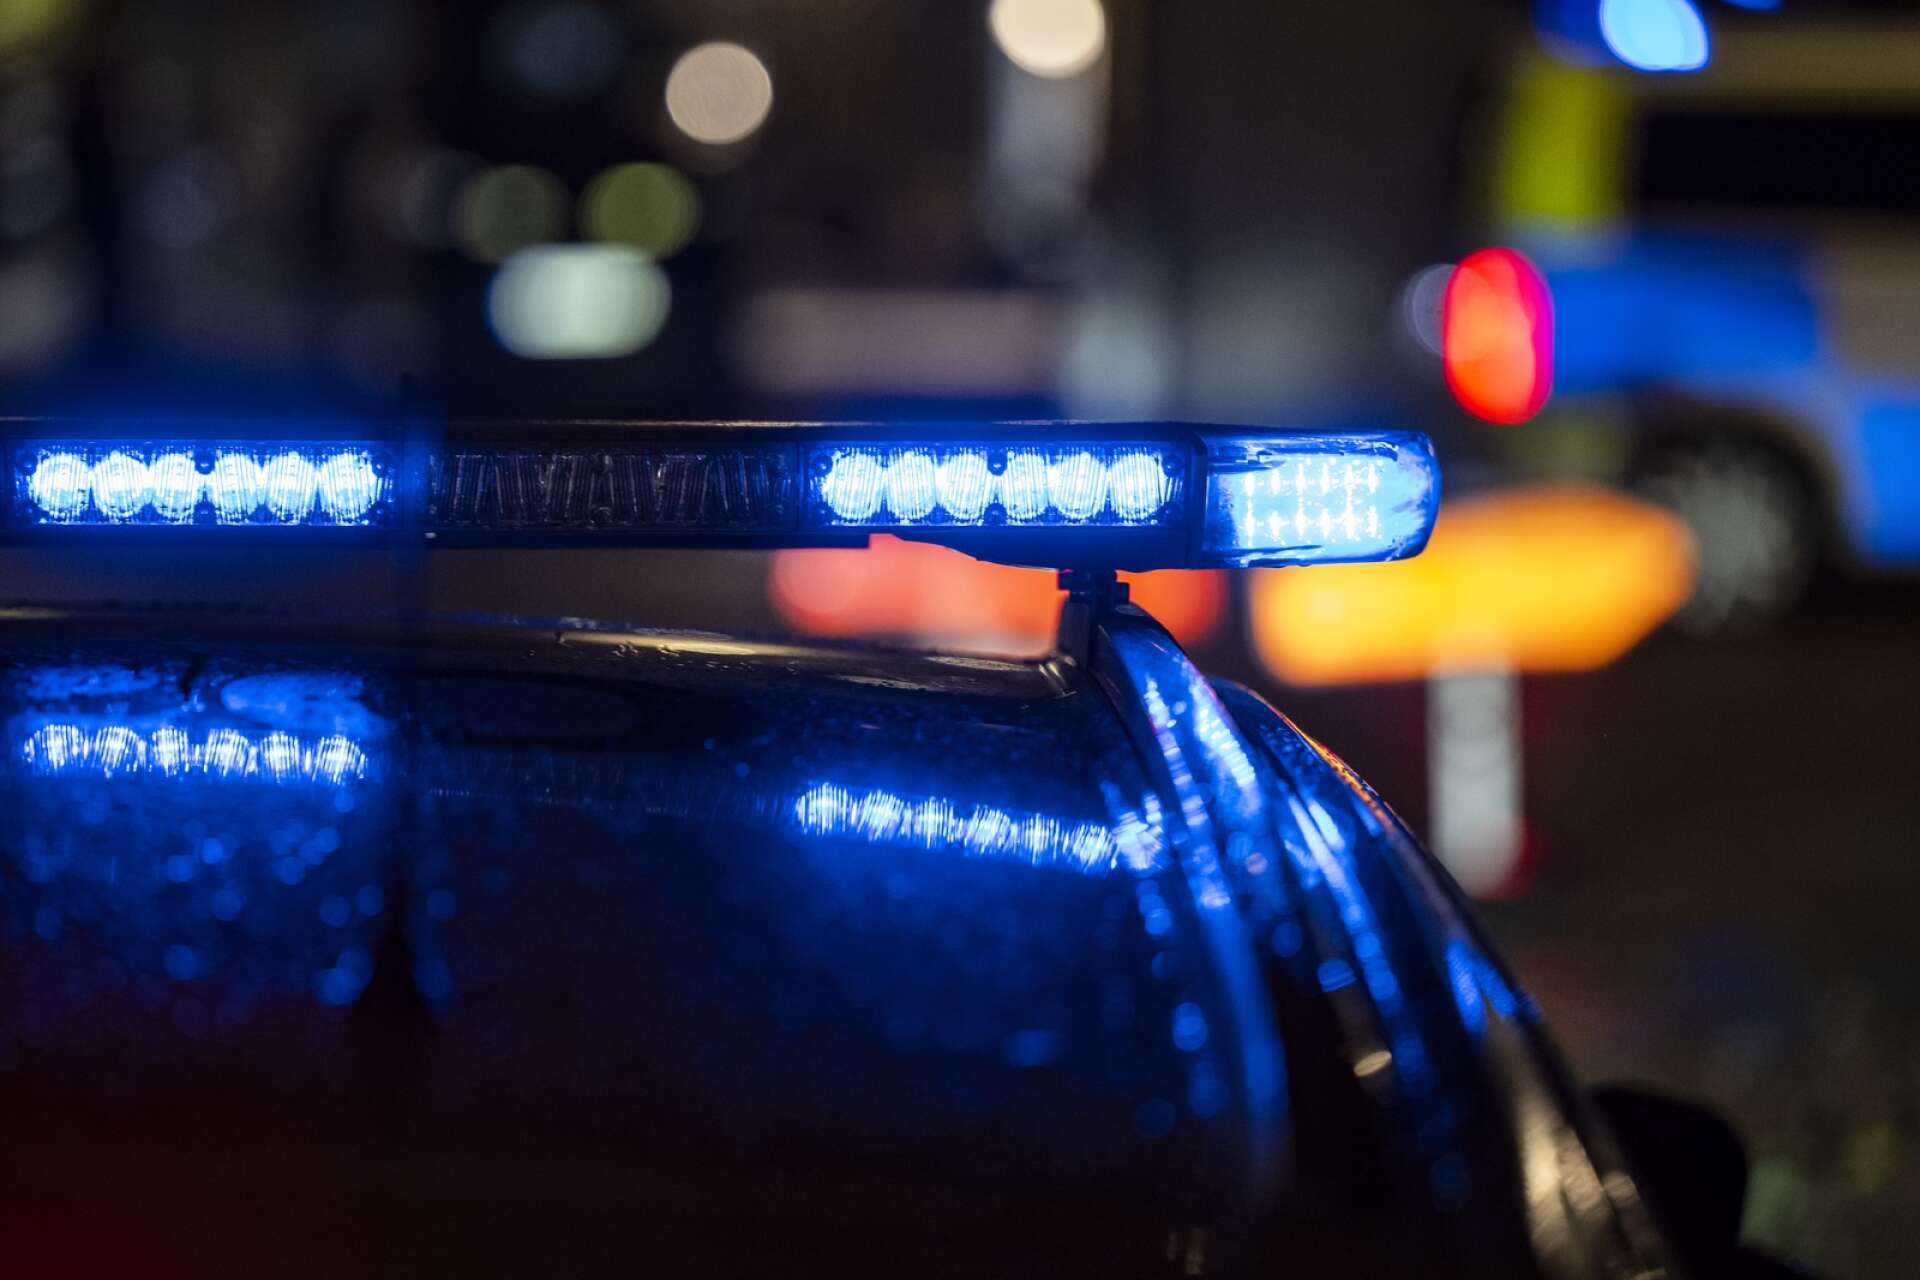 Polis larmades till en adress i Åmål där en man ska ha misshandlat en kvinna och ett barn. Mannen är fortfarande på fri fot./GENREBILD